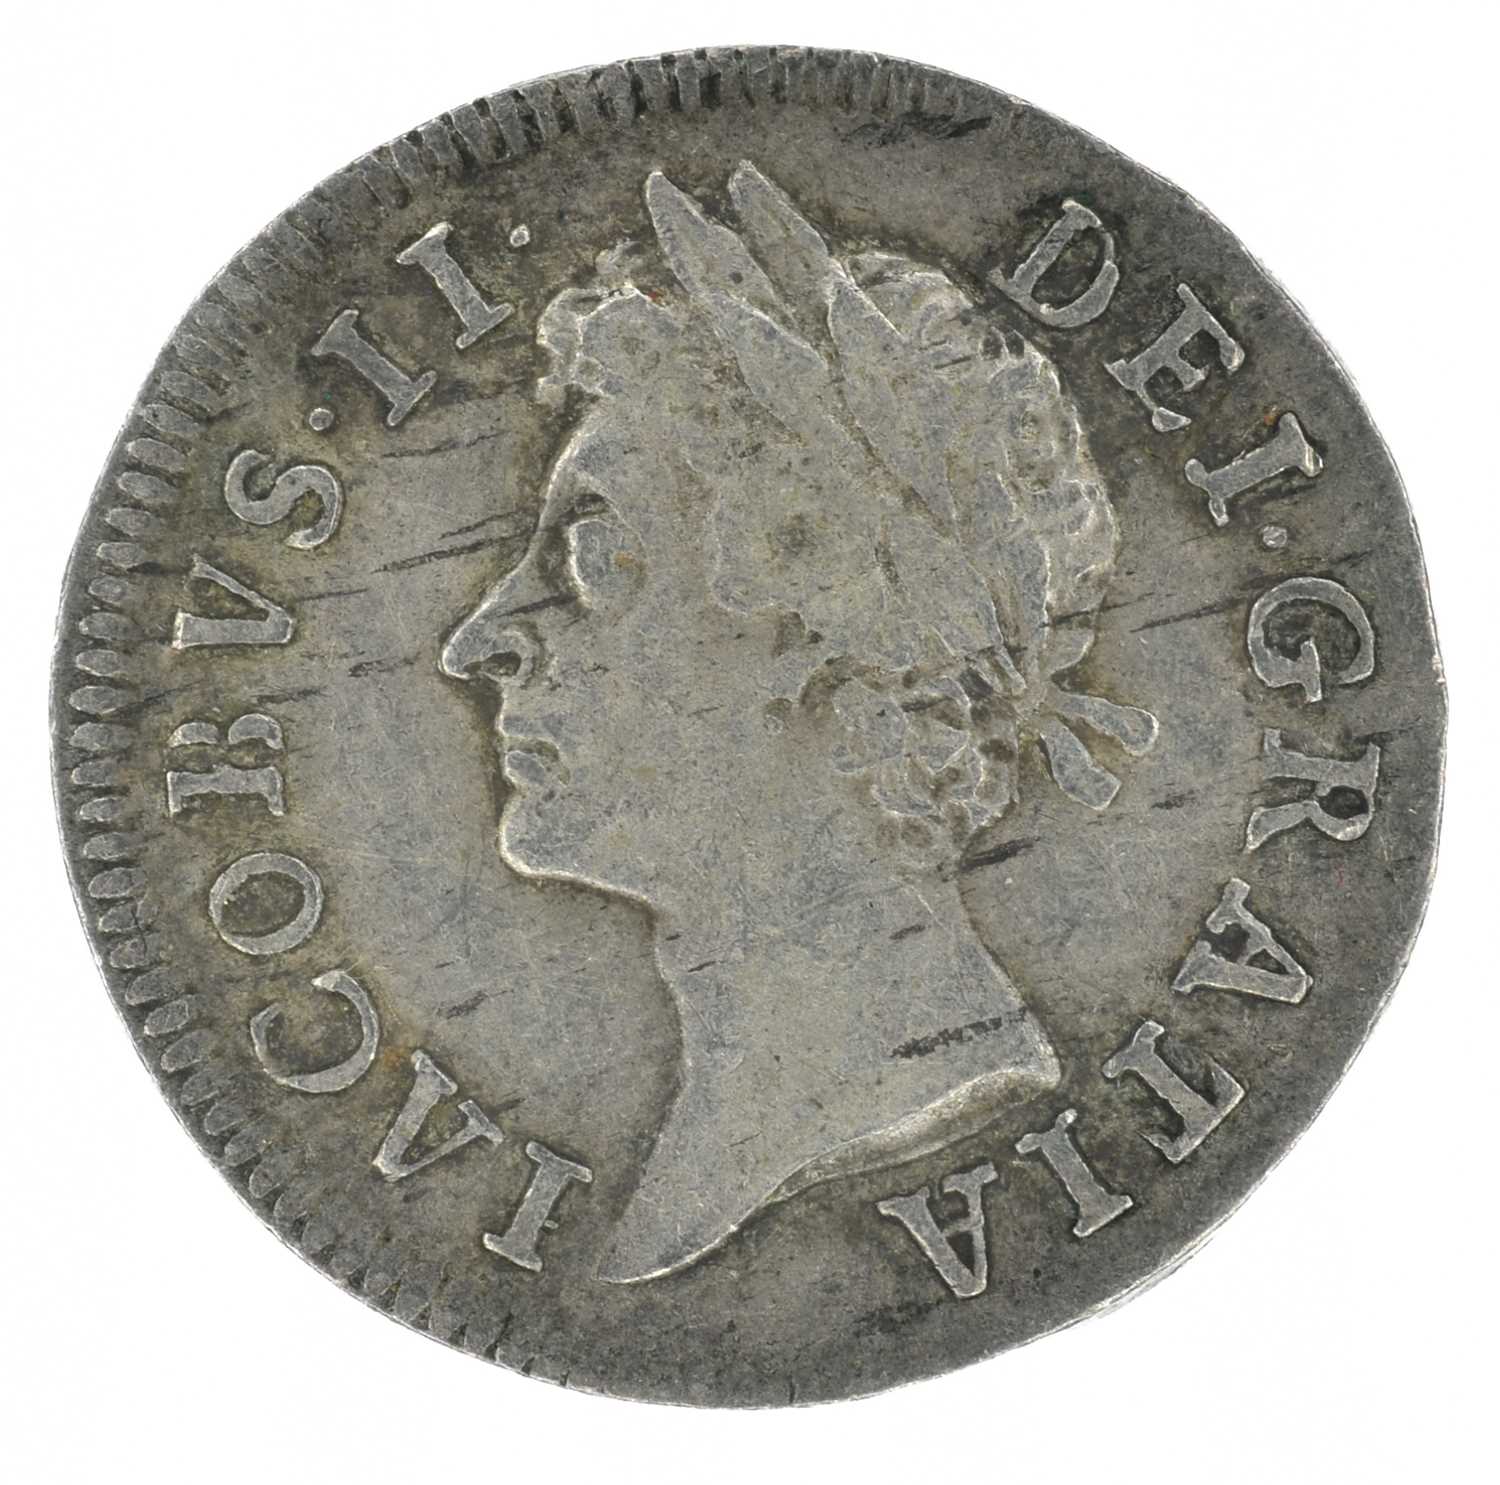 King James II, Twopence, 1686 IΛCOBVS.